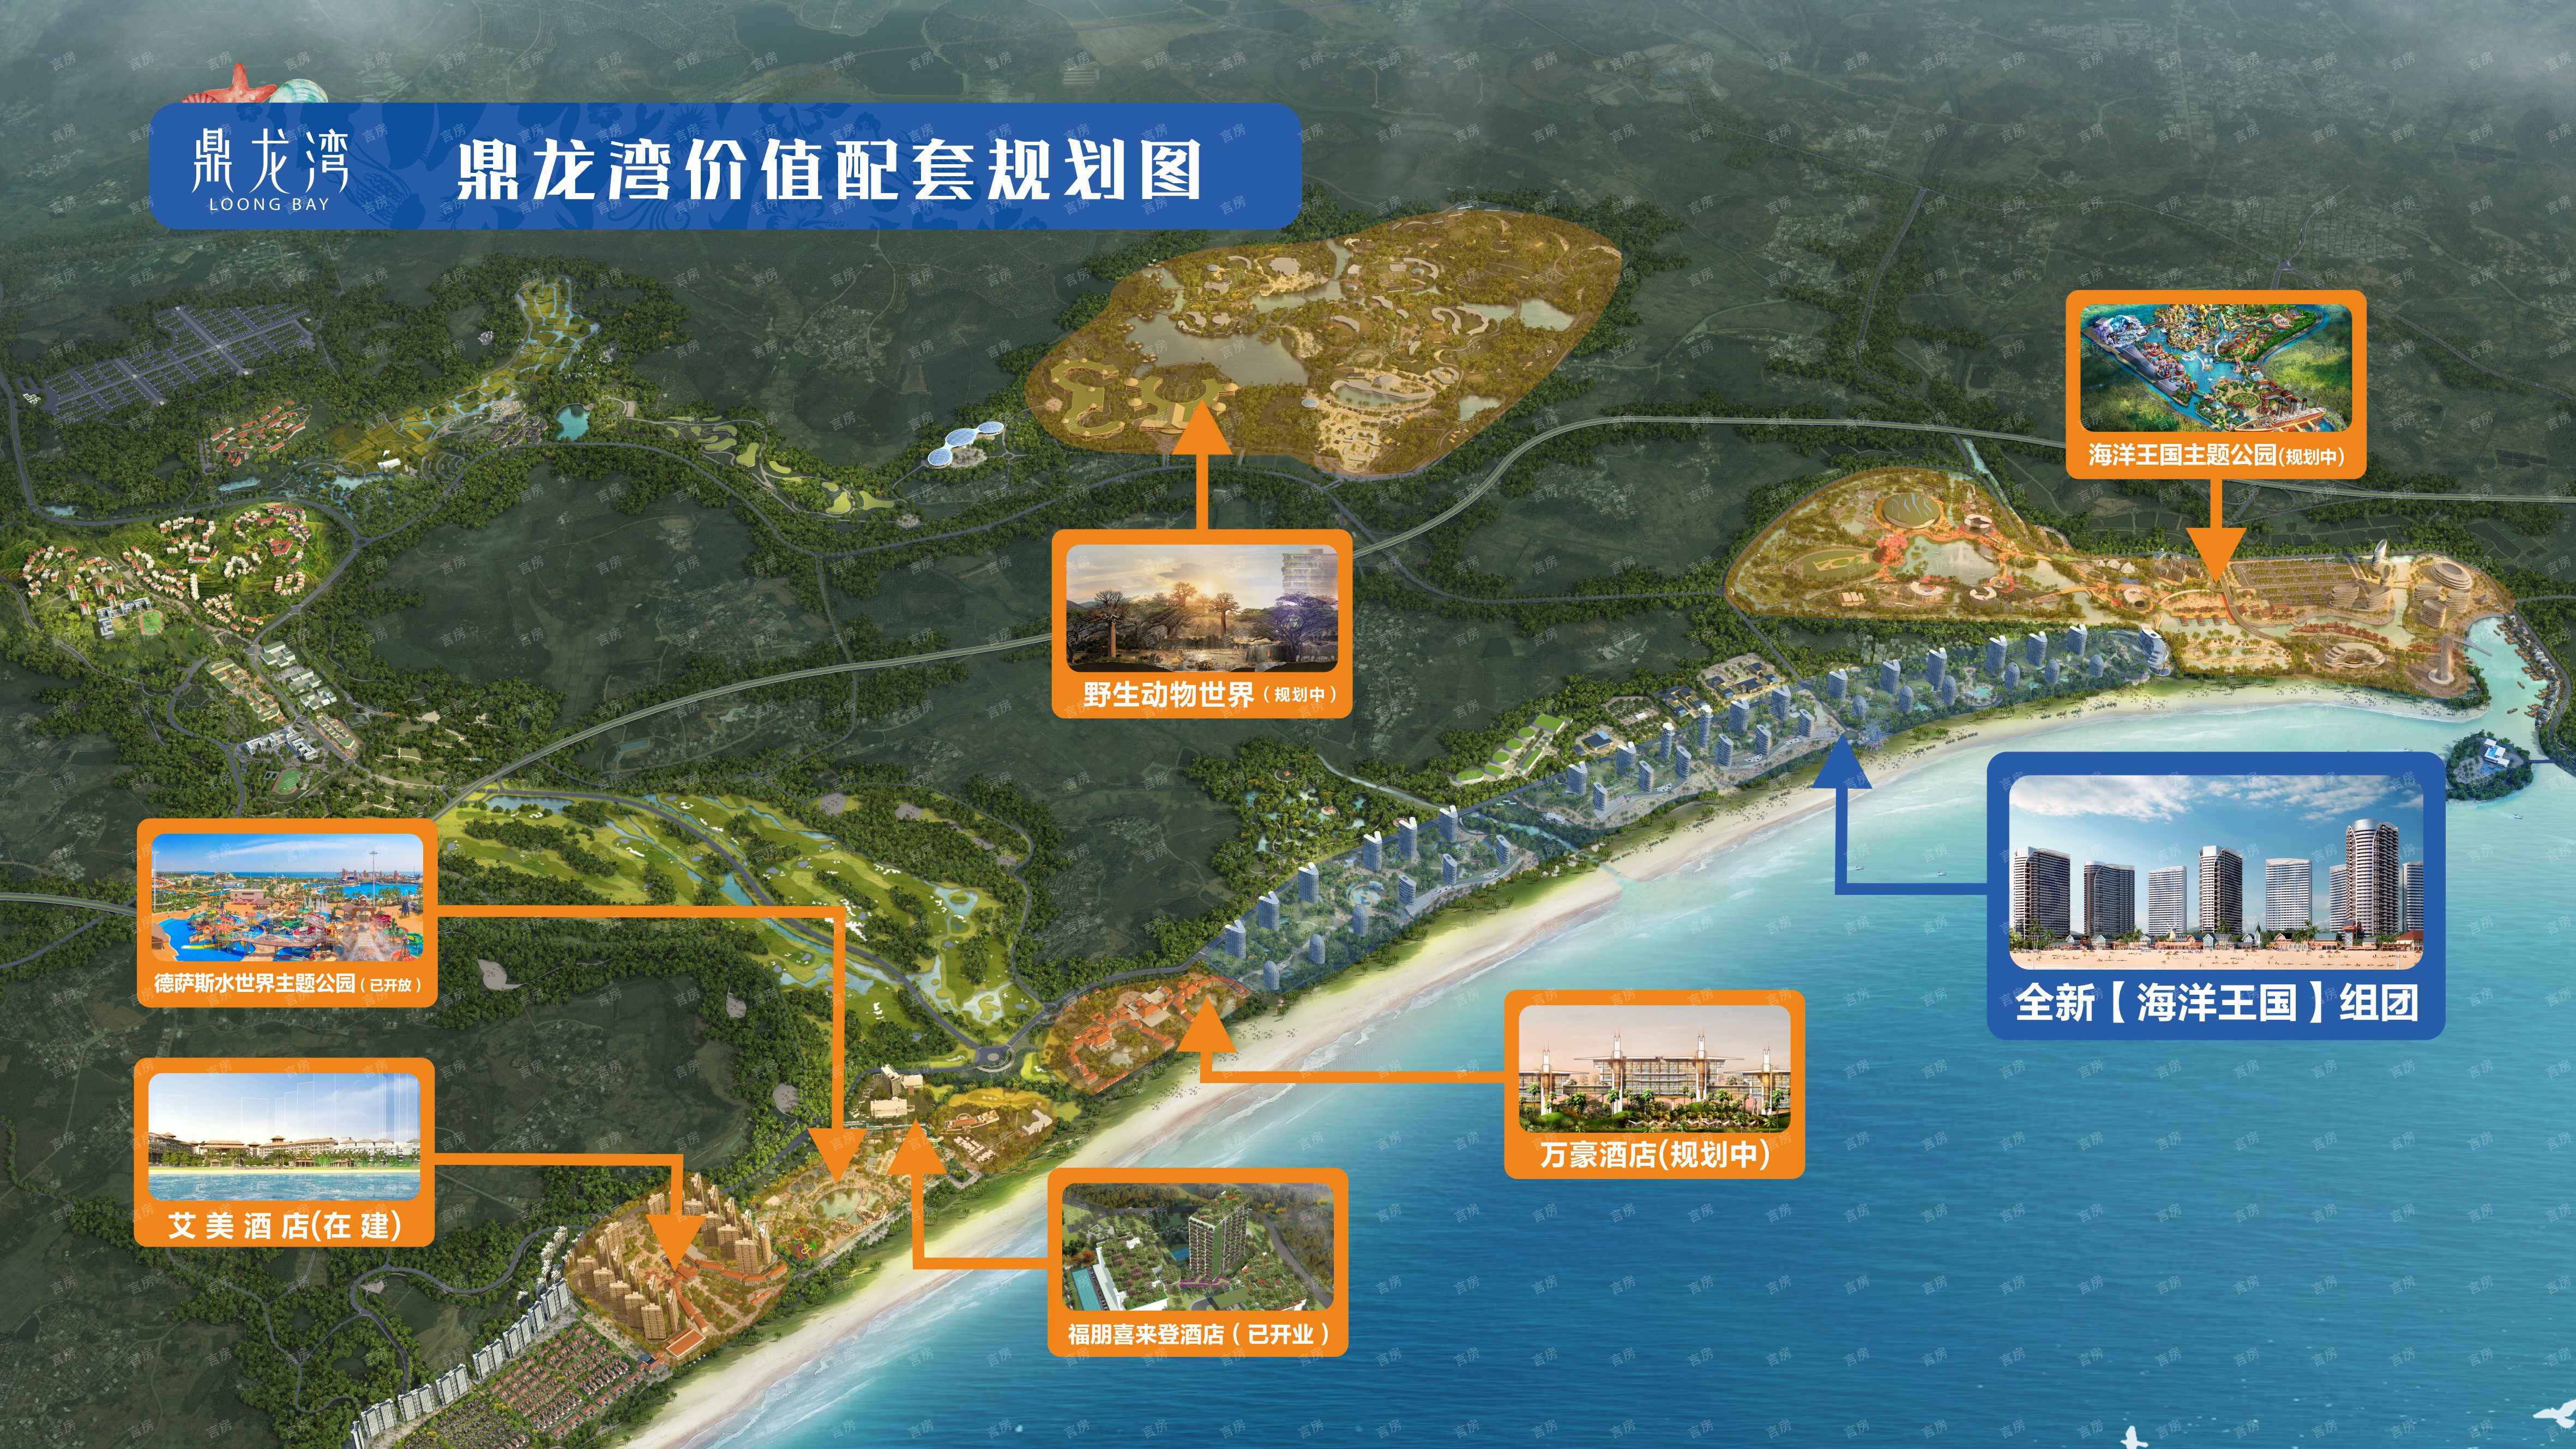 鼎龙湾国际海洋度假区现场图片